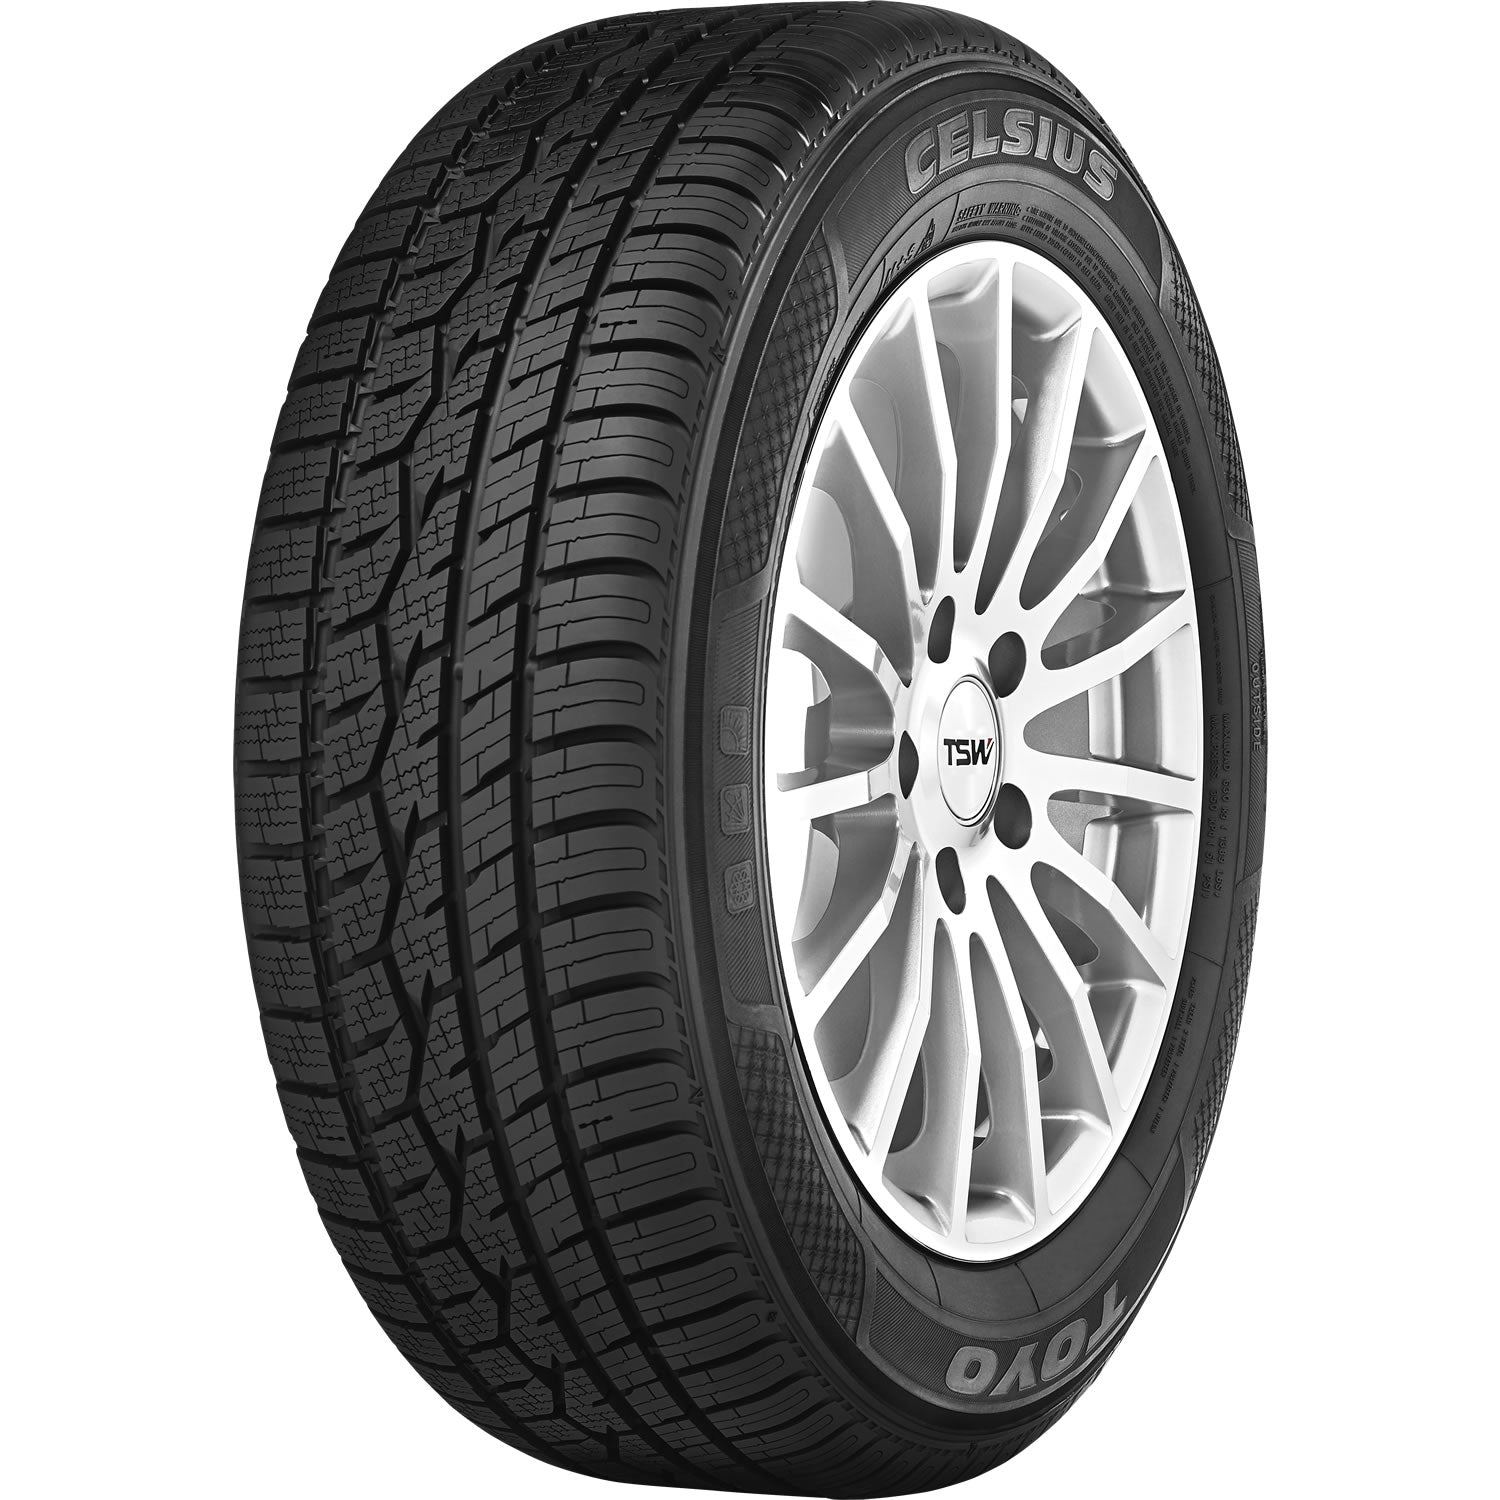 TOYO TIRES CELSIUS 185/60R15 (23.7X7.4R 15) Tires